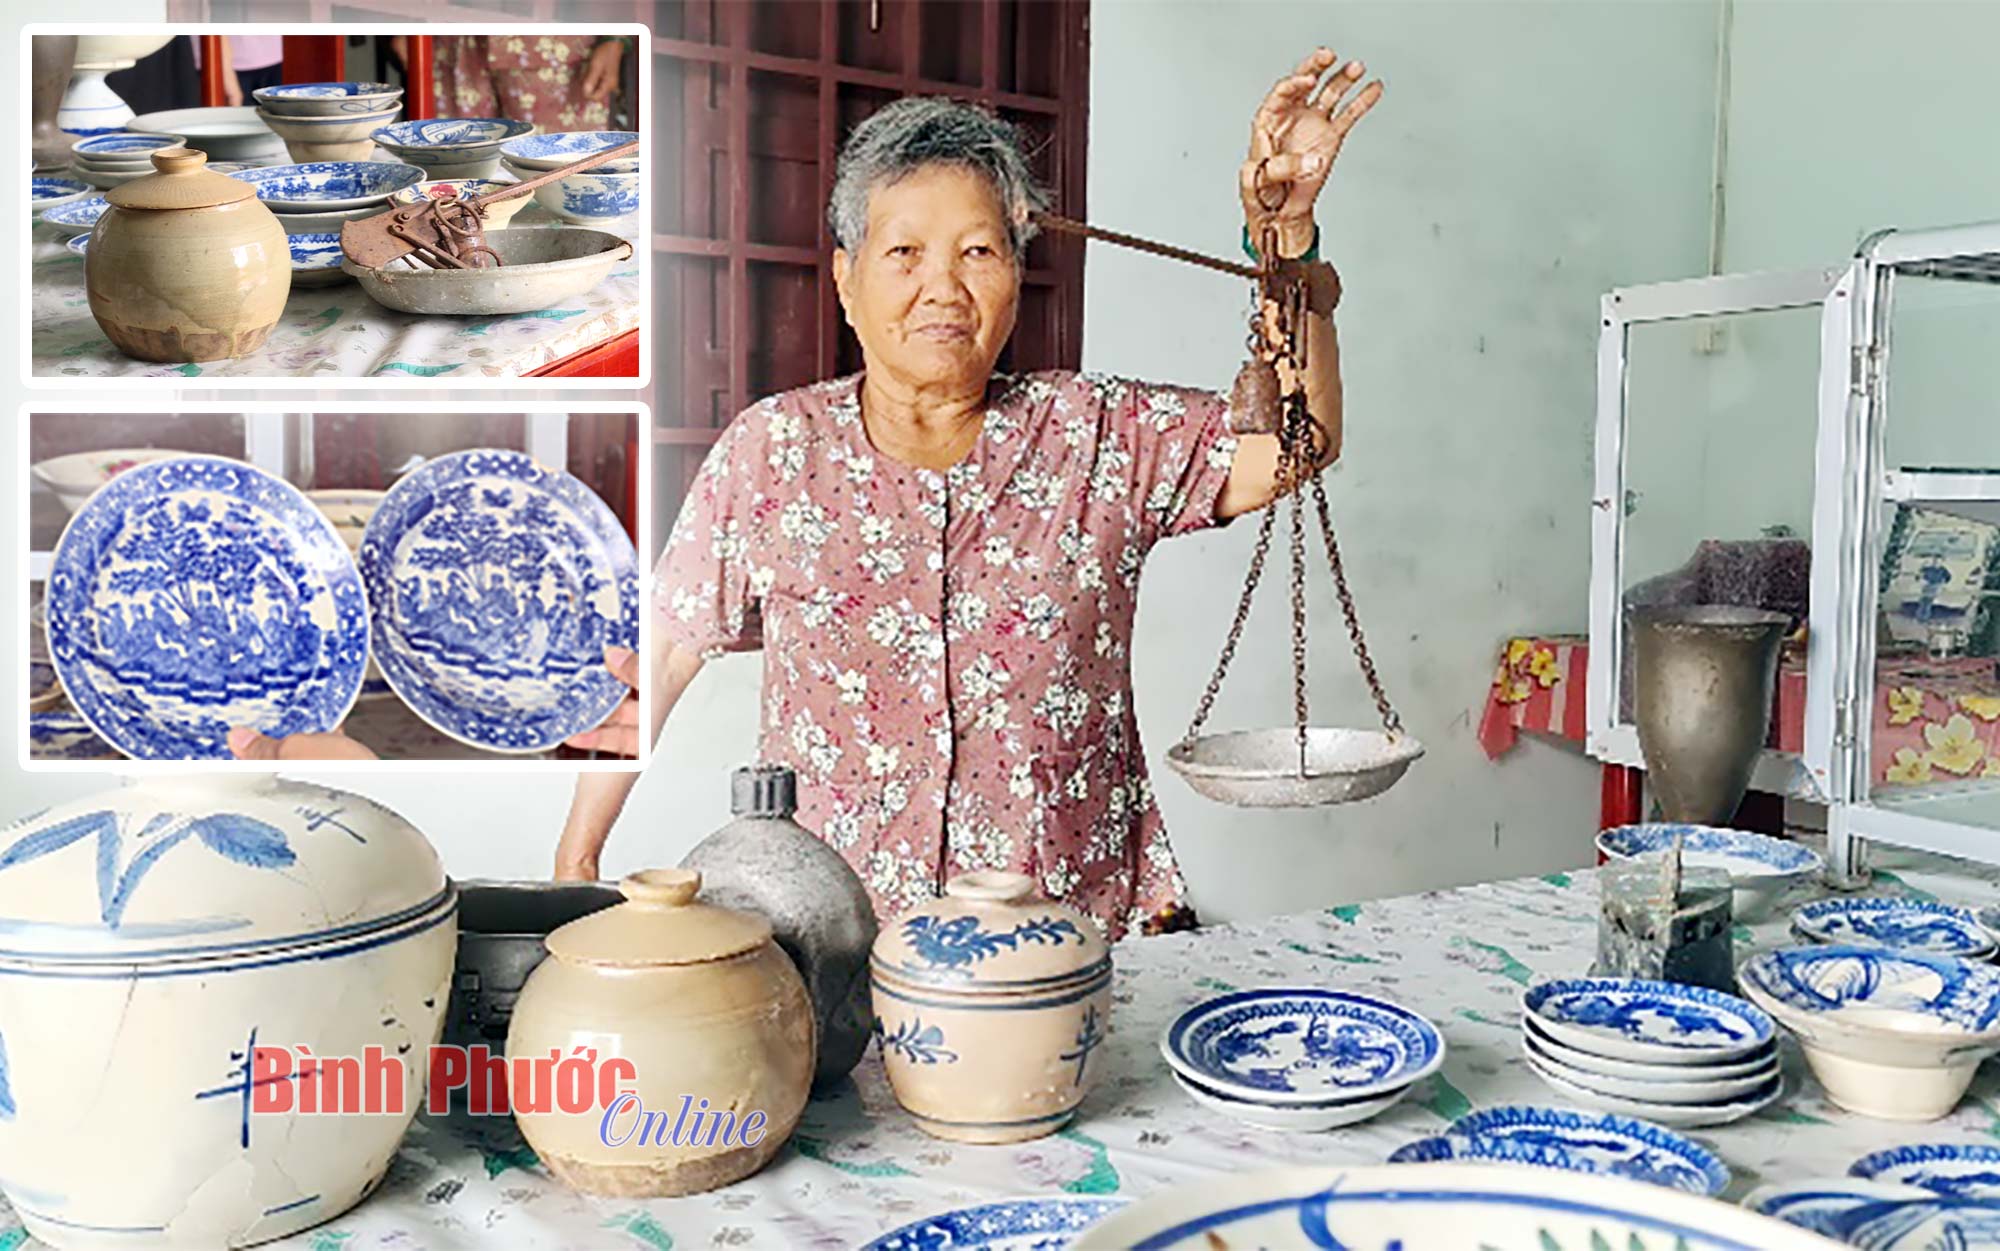 Một cụ bà 76 tuổi ở Bình Phước sưu tầm đồ cổ để la liệt trong nhà khiến cả làng phục lăn  - Ảnh 1.